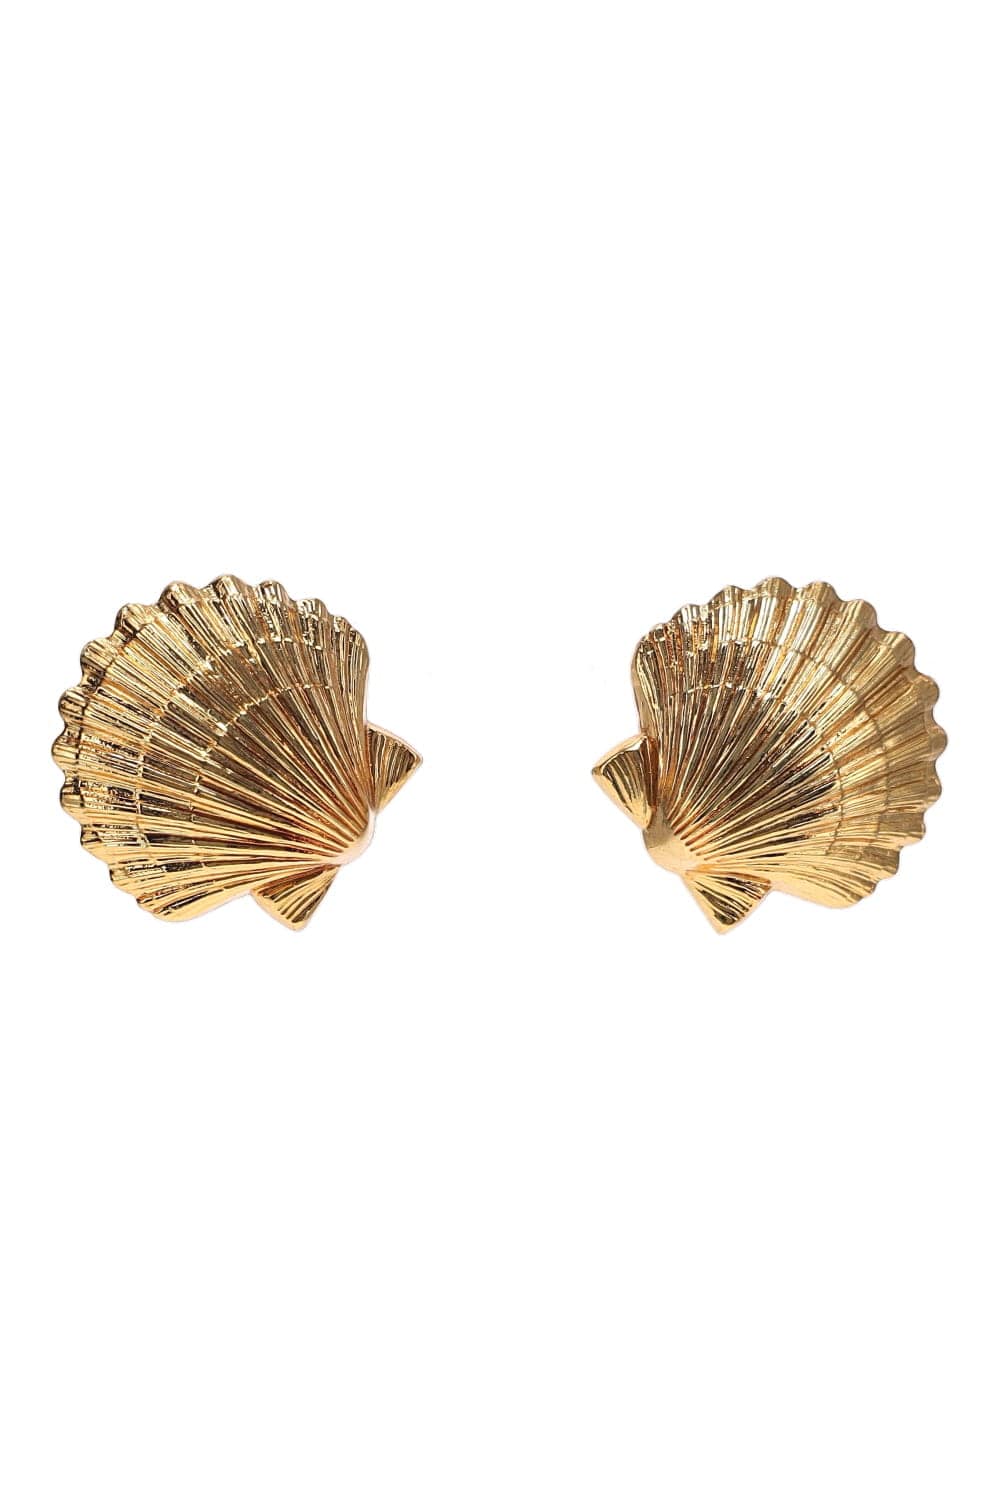 Jennifer Behr Mar Gold Scallop Shell Stud Earrings